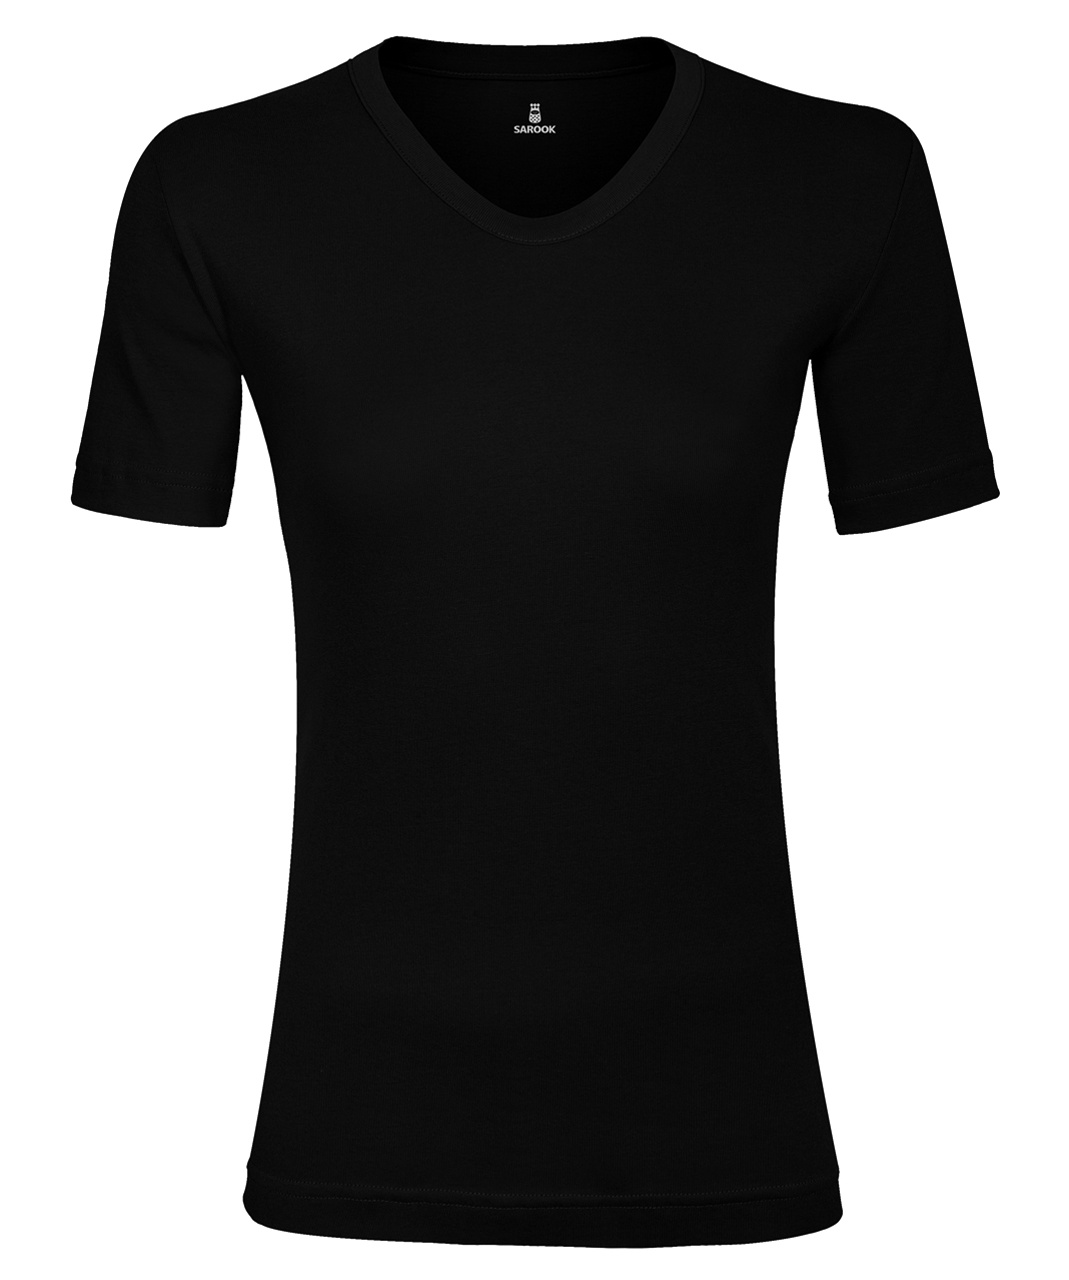 تی شرت زنانه ساروک مدل TZV14 رنگ مشکی